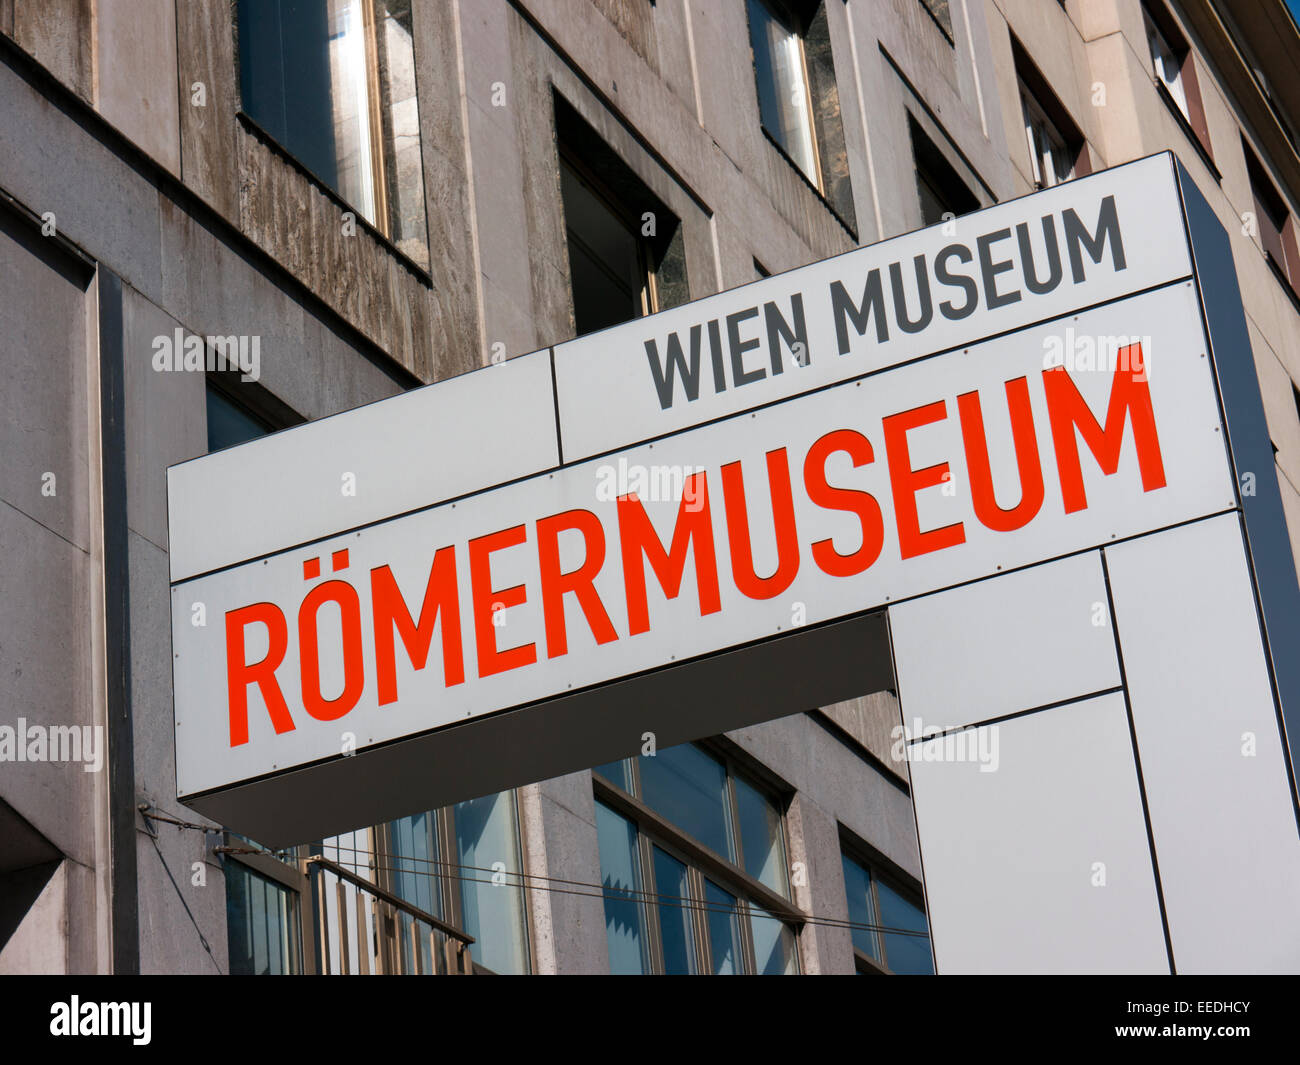 Romermuseum sign in Vienne Autriche Banque D'Images